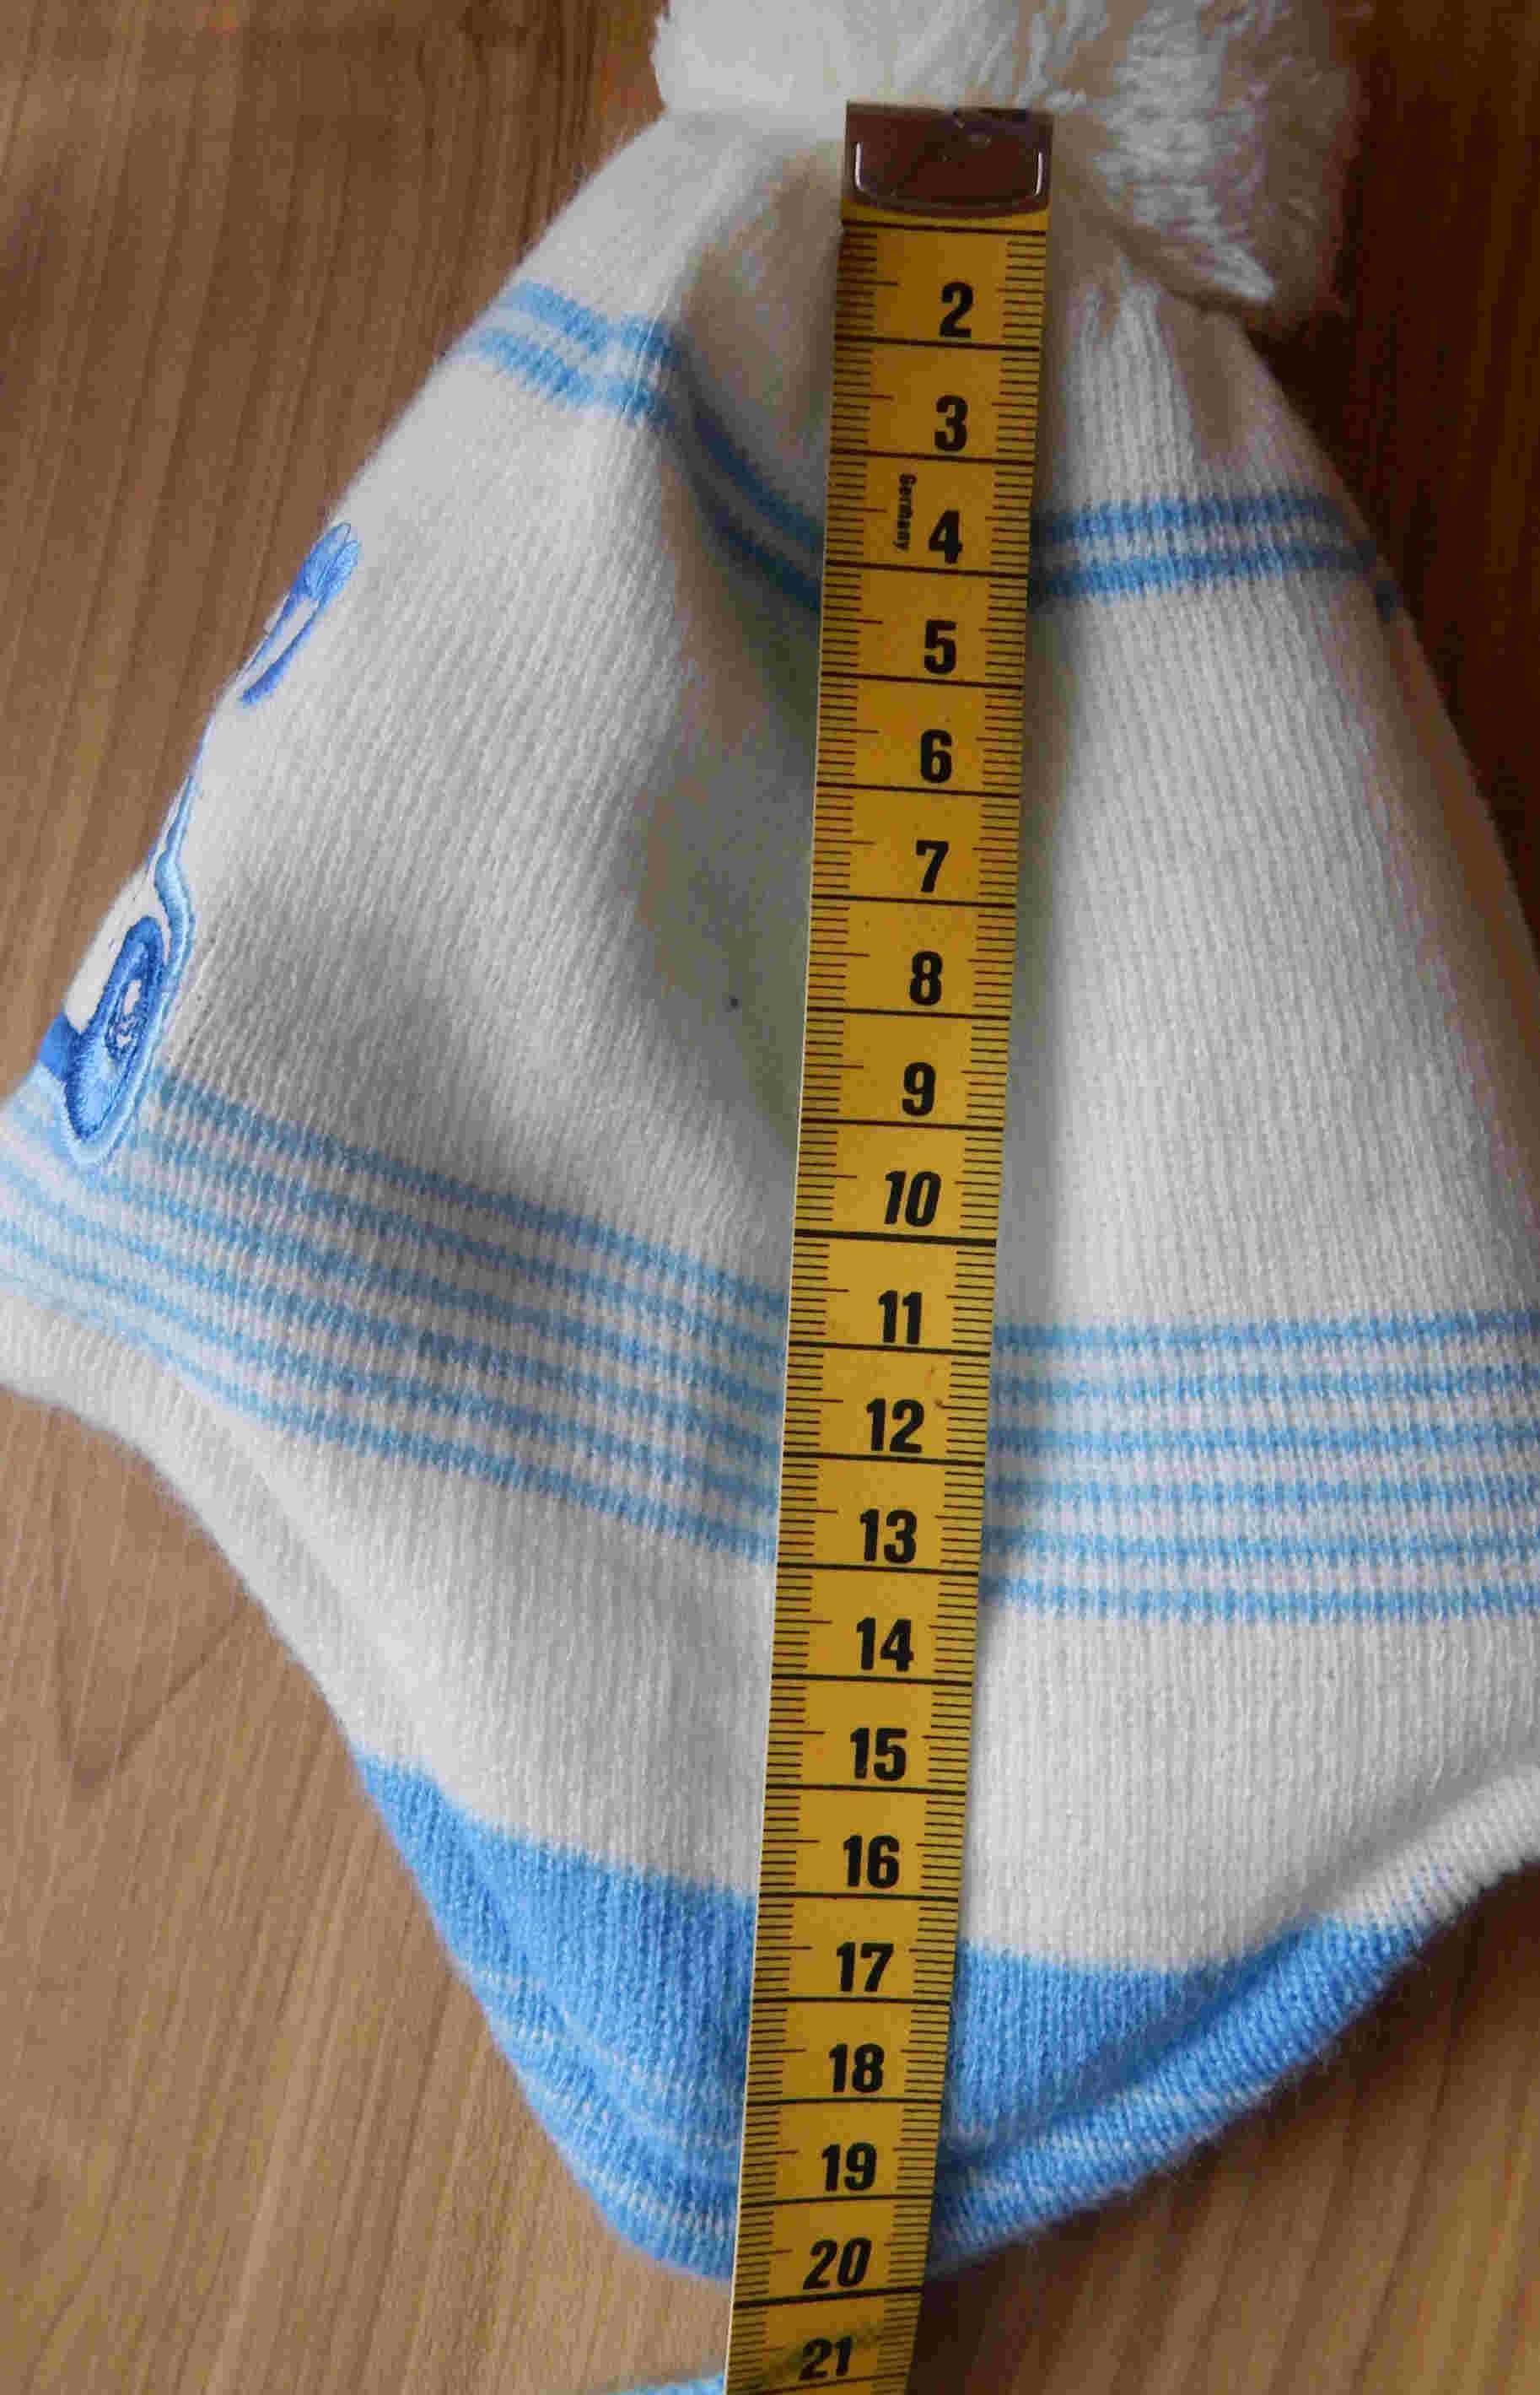 Czapka szalik rękawiczki buciki wełna zima 36/38/40 2m+